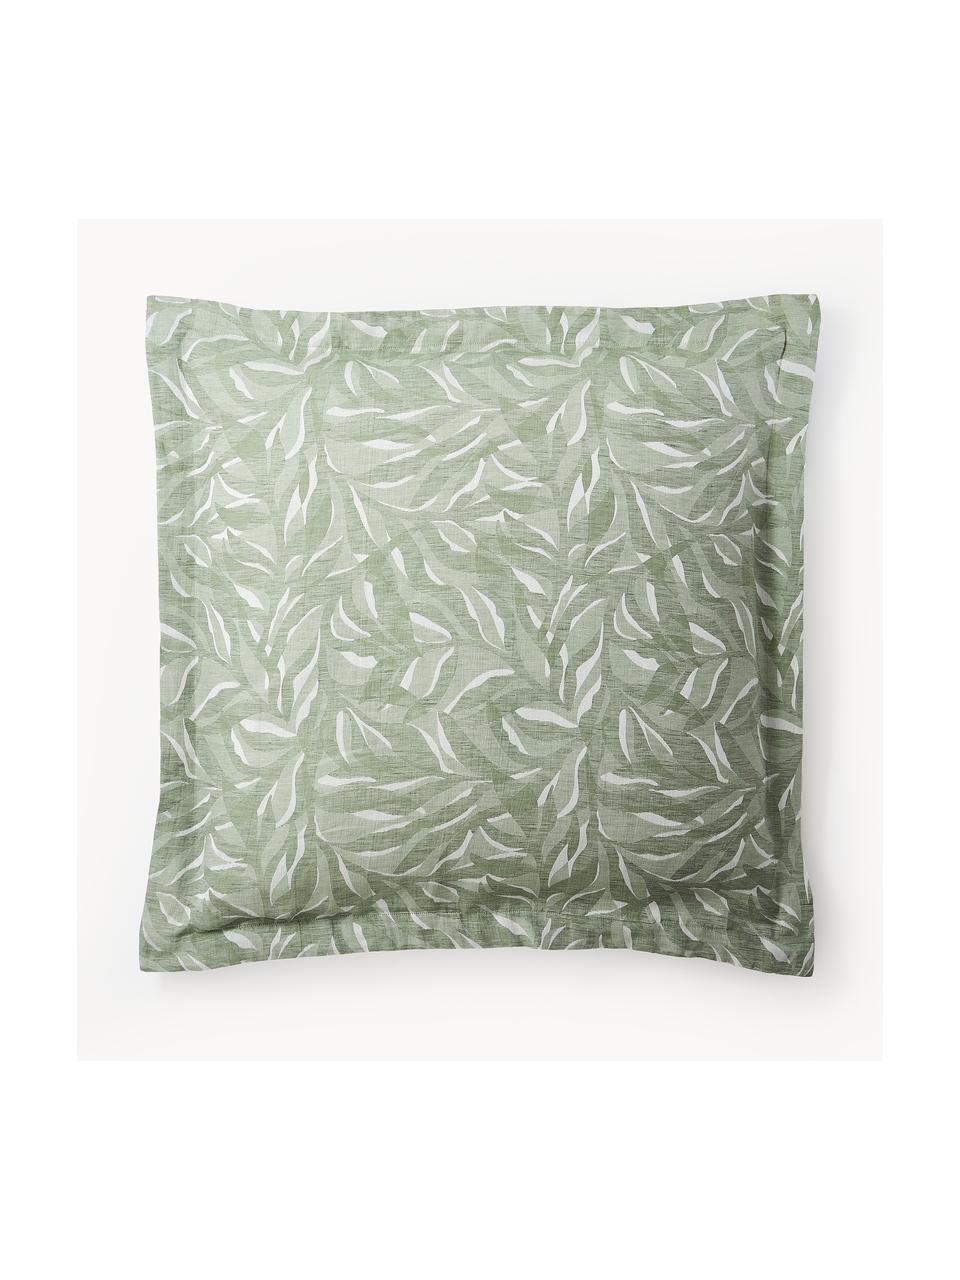 Poszewka na poduszkę z bawełny i lnu Amita, Szałwiowy zielony, S 70 x D 80 cm